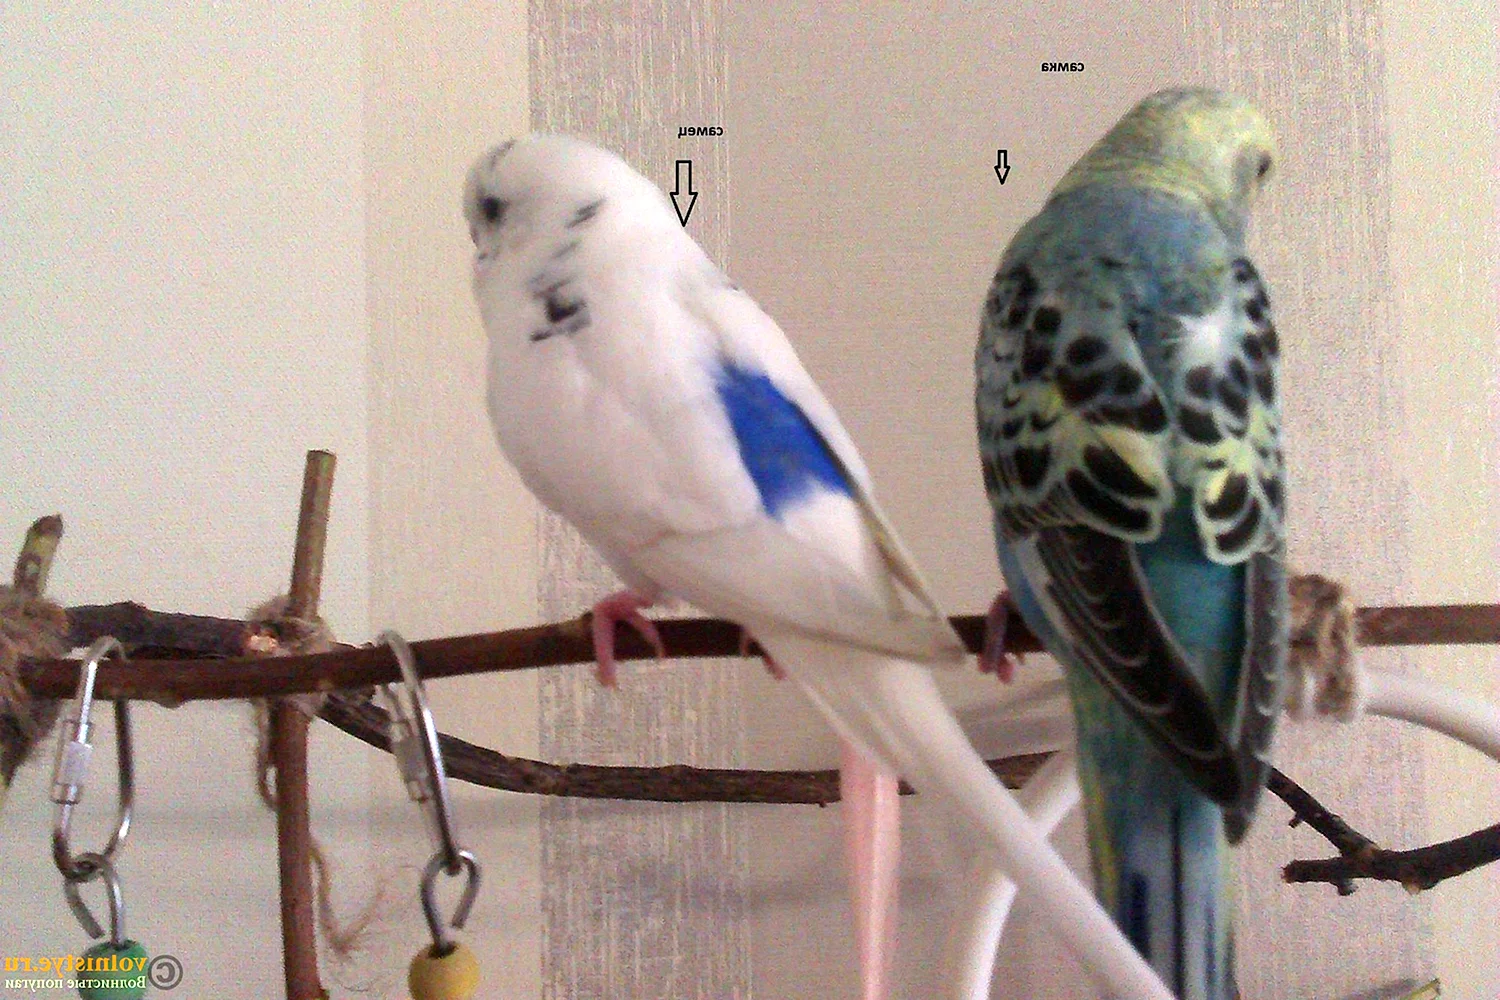 Самка и самец волнистого попугая